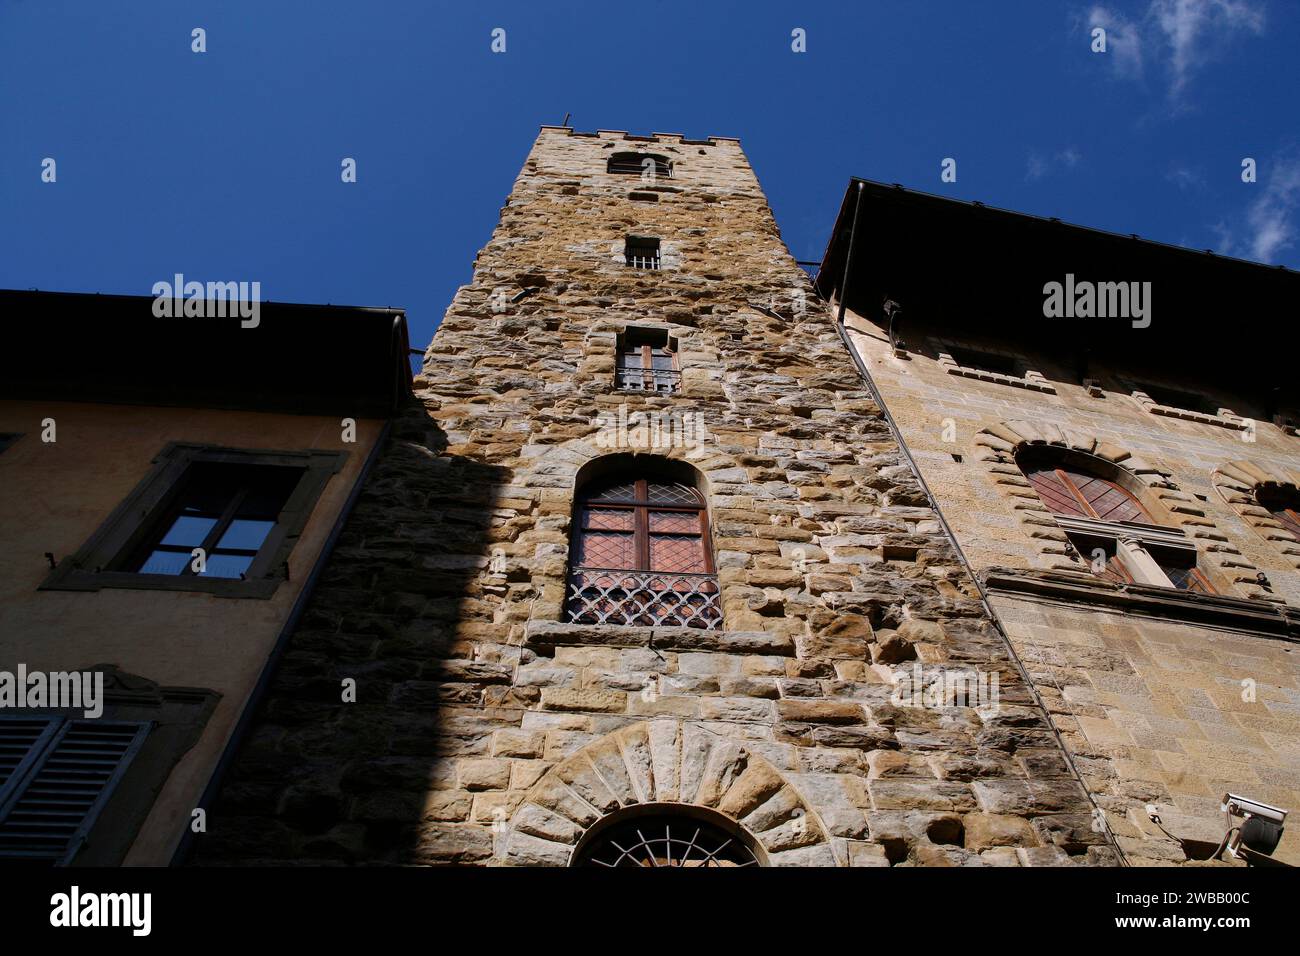 Italy Tuscany Arezzo  - Tower-house in Corso italia Stock Photo